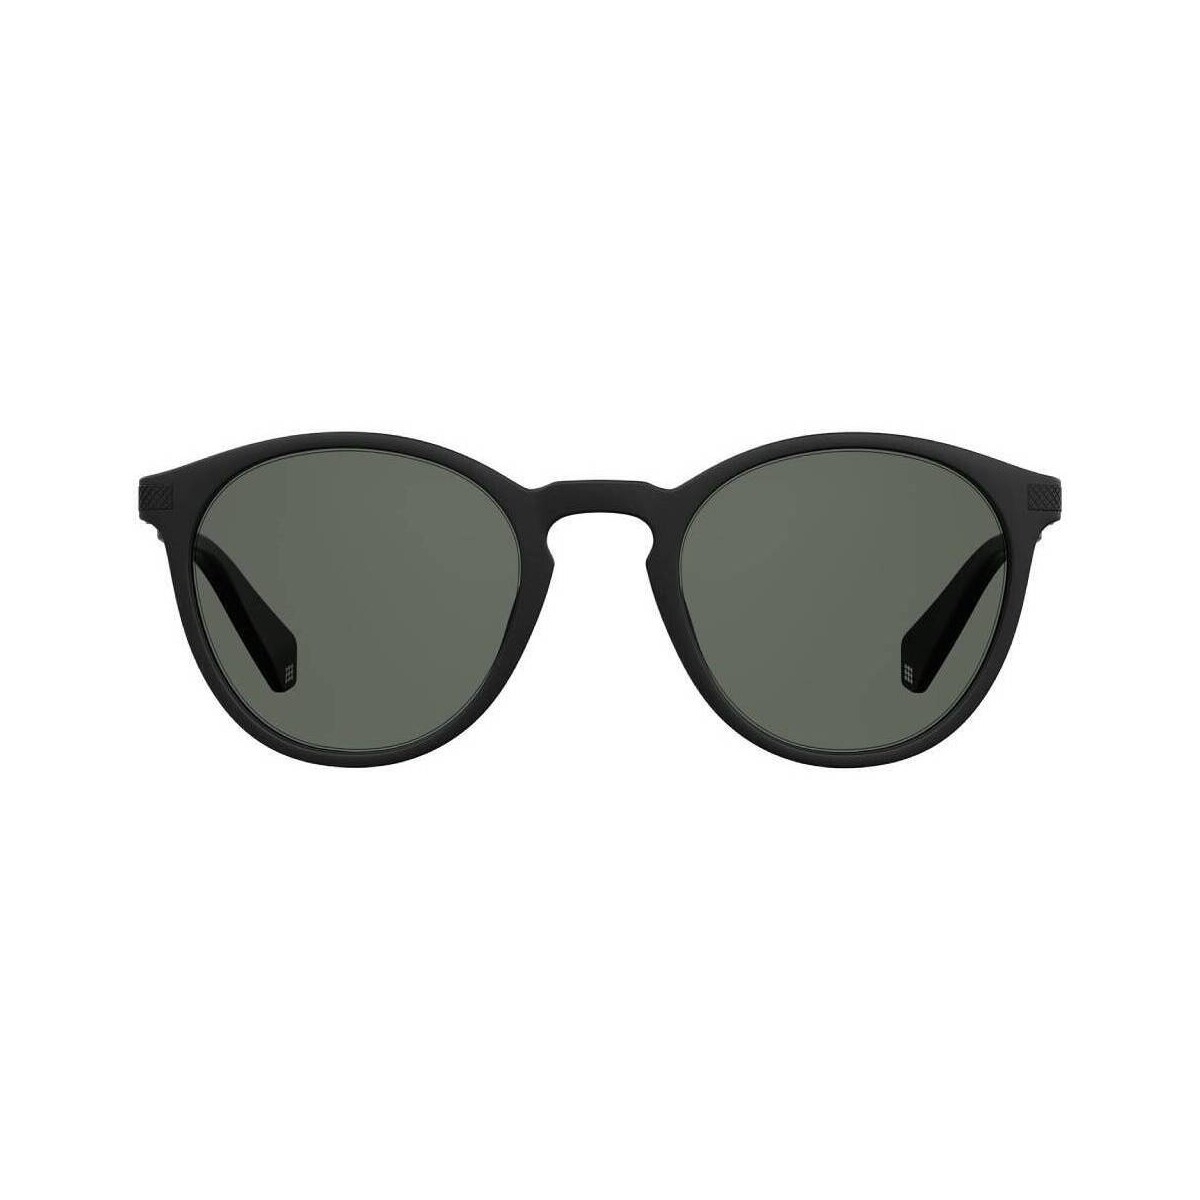 Orologi & Gioielli Uomo Occhiali da sole Polaroid PLD 2062/S Occhiali da sole, Nero-opaco/Grigio, 50 mm Altri